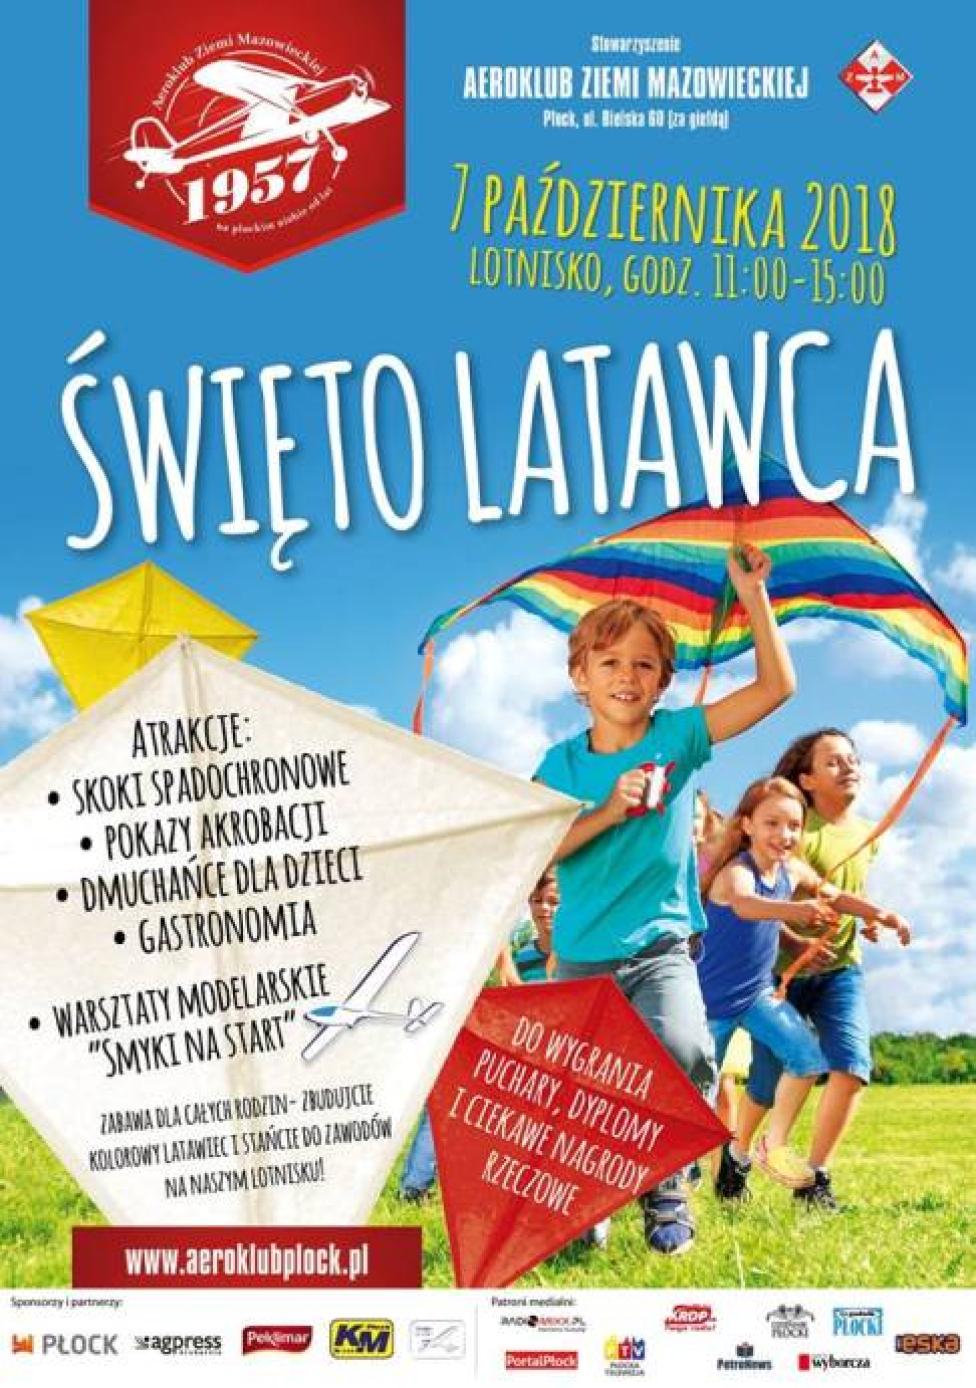 Święto Latawca 2018 w Płocku (fot. aeroklubplock.pl)